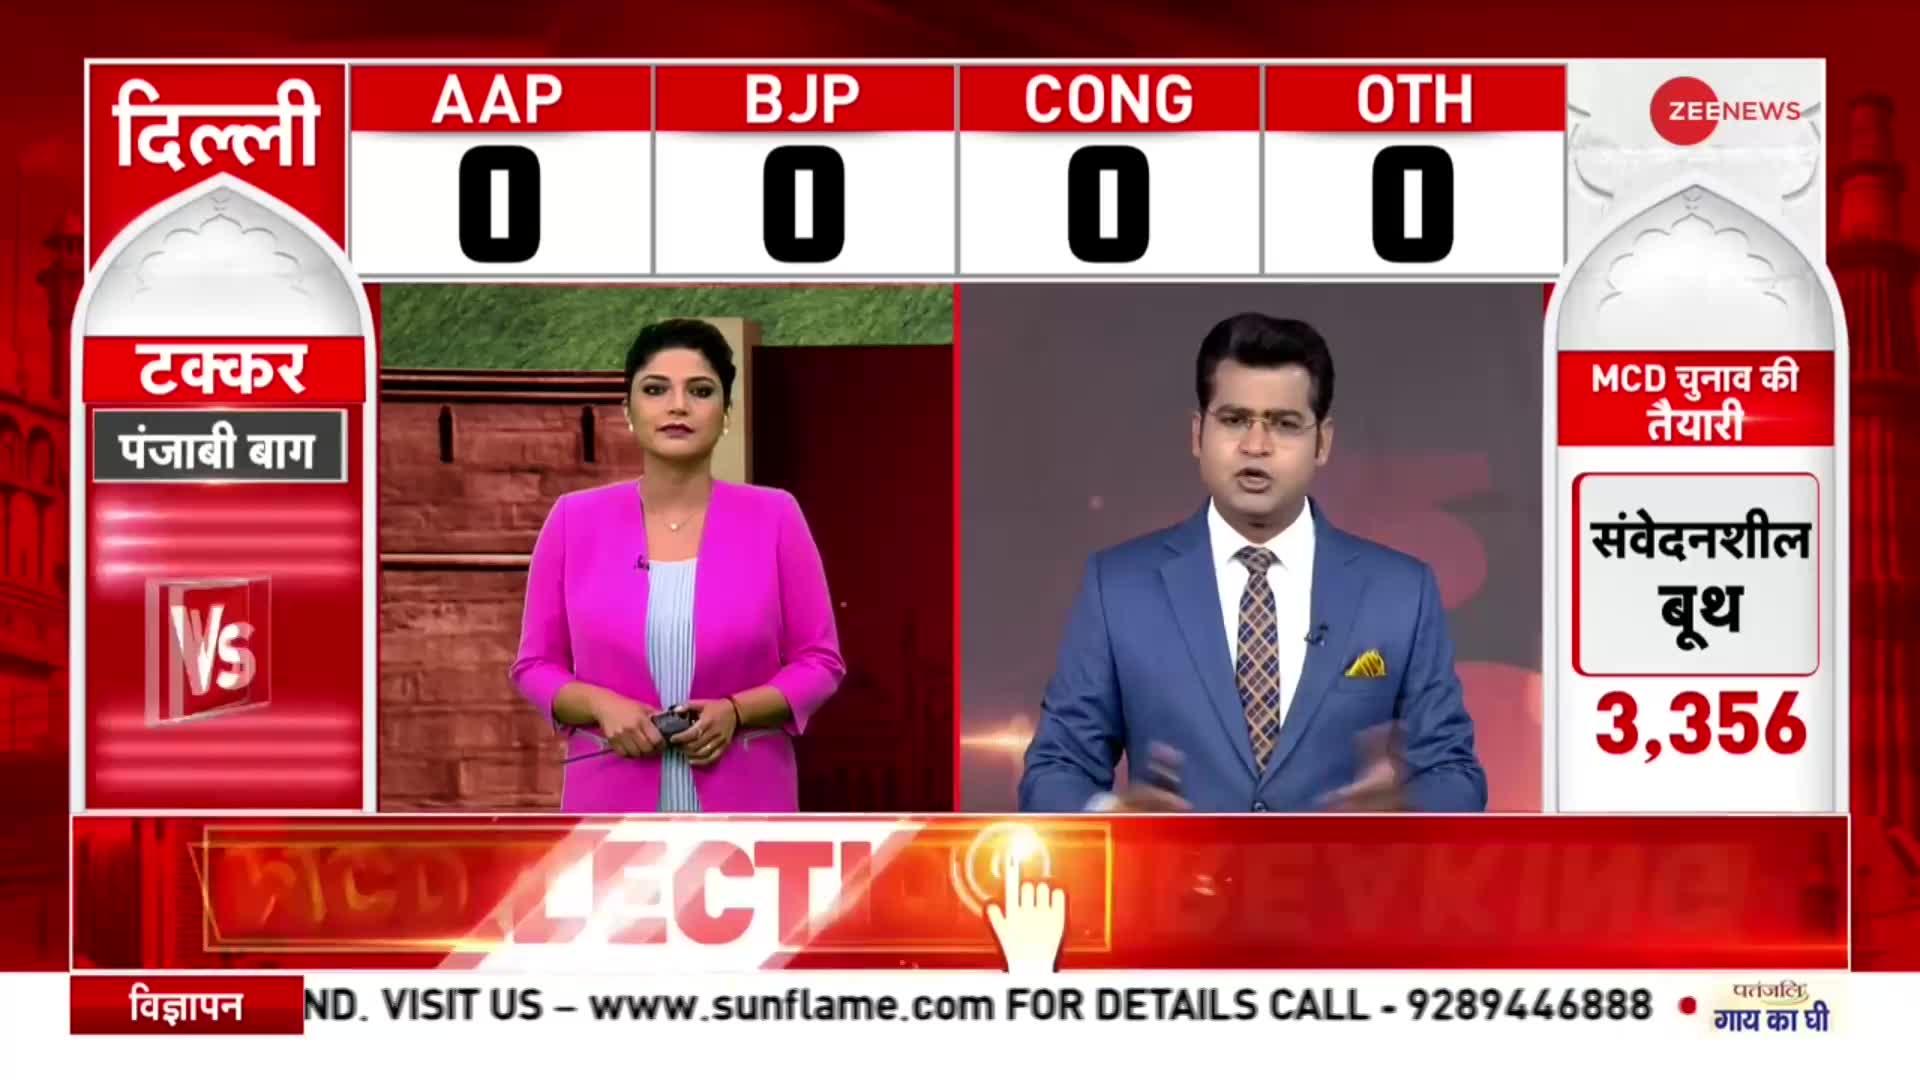 Delhi MCD Election Results: MCD चुनाव की मतगणना आज, जानें Vote Counting के लिए क्या कुछ तैयारियां